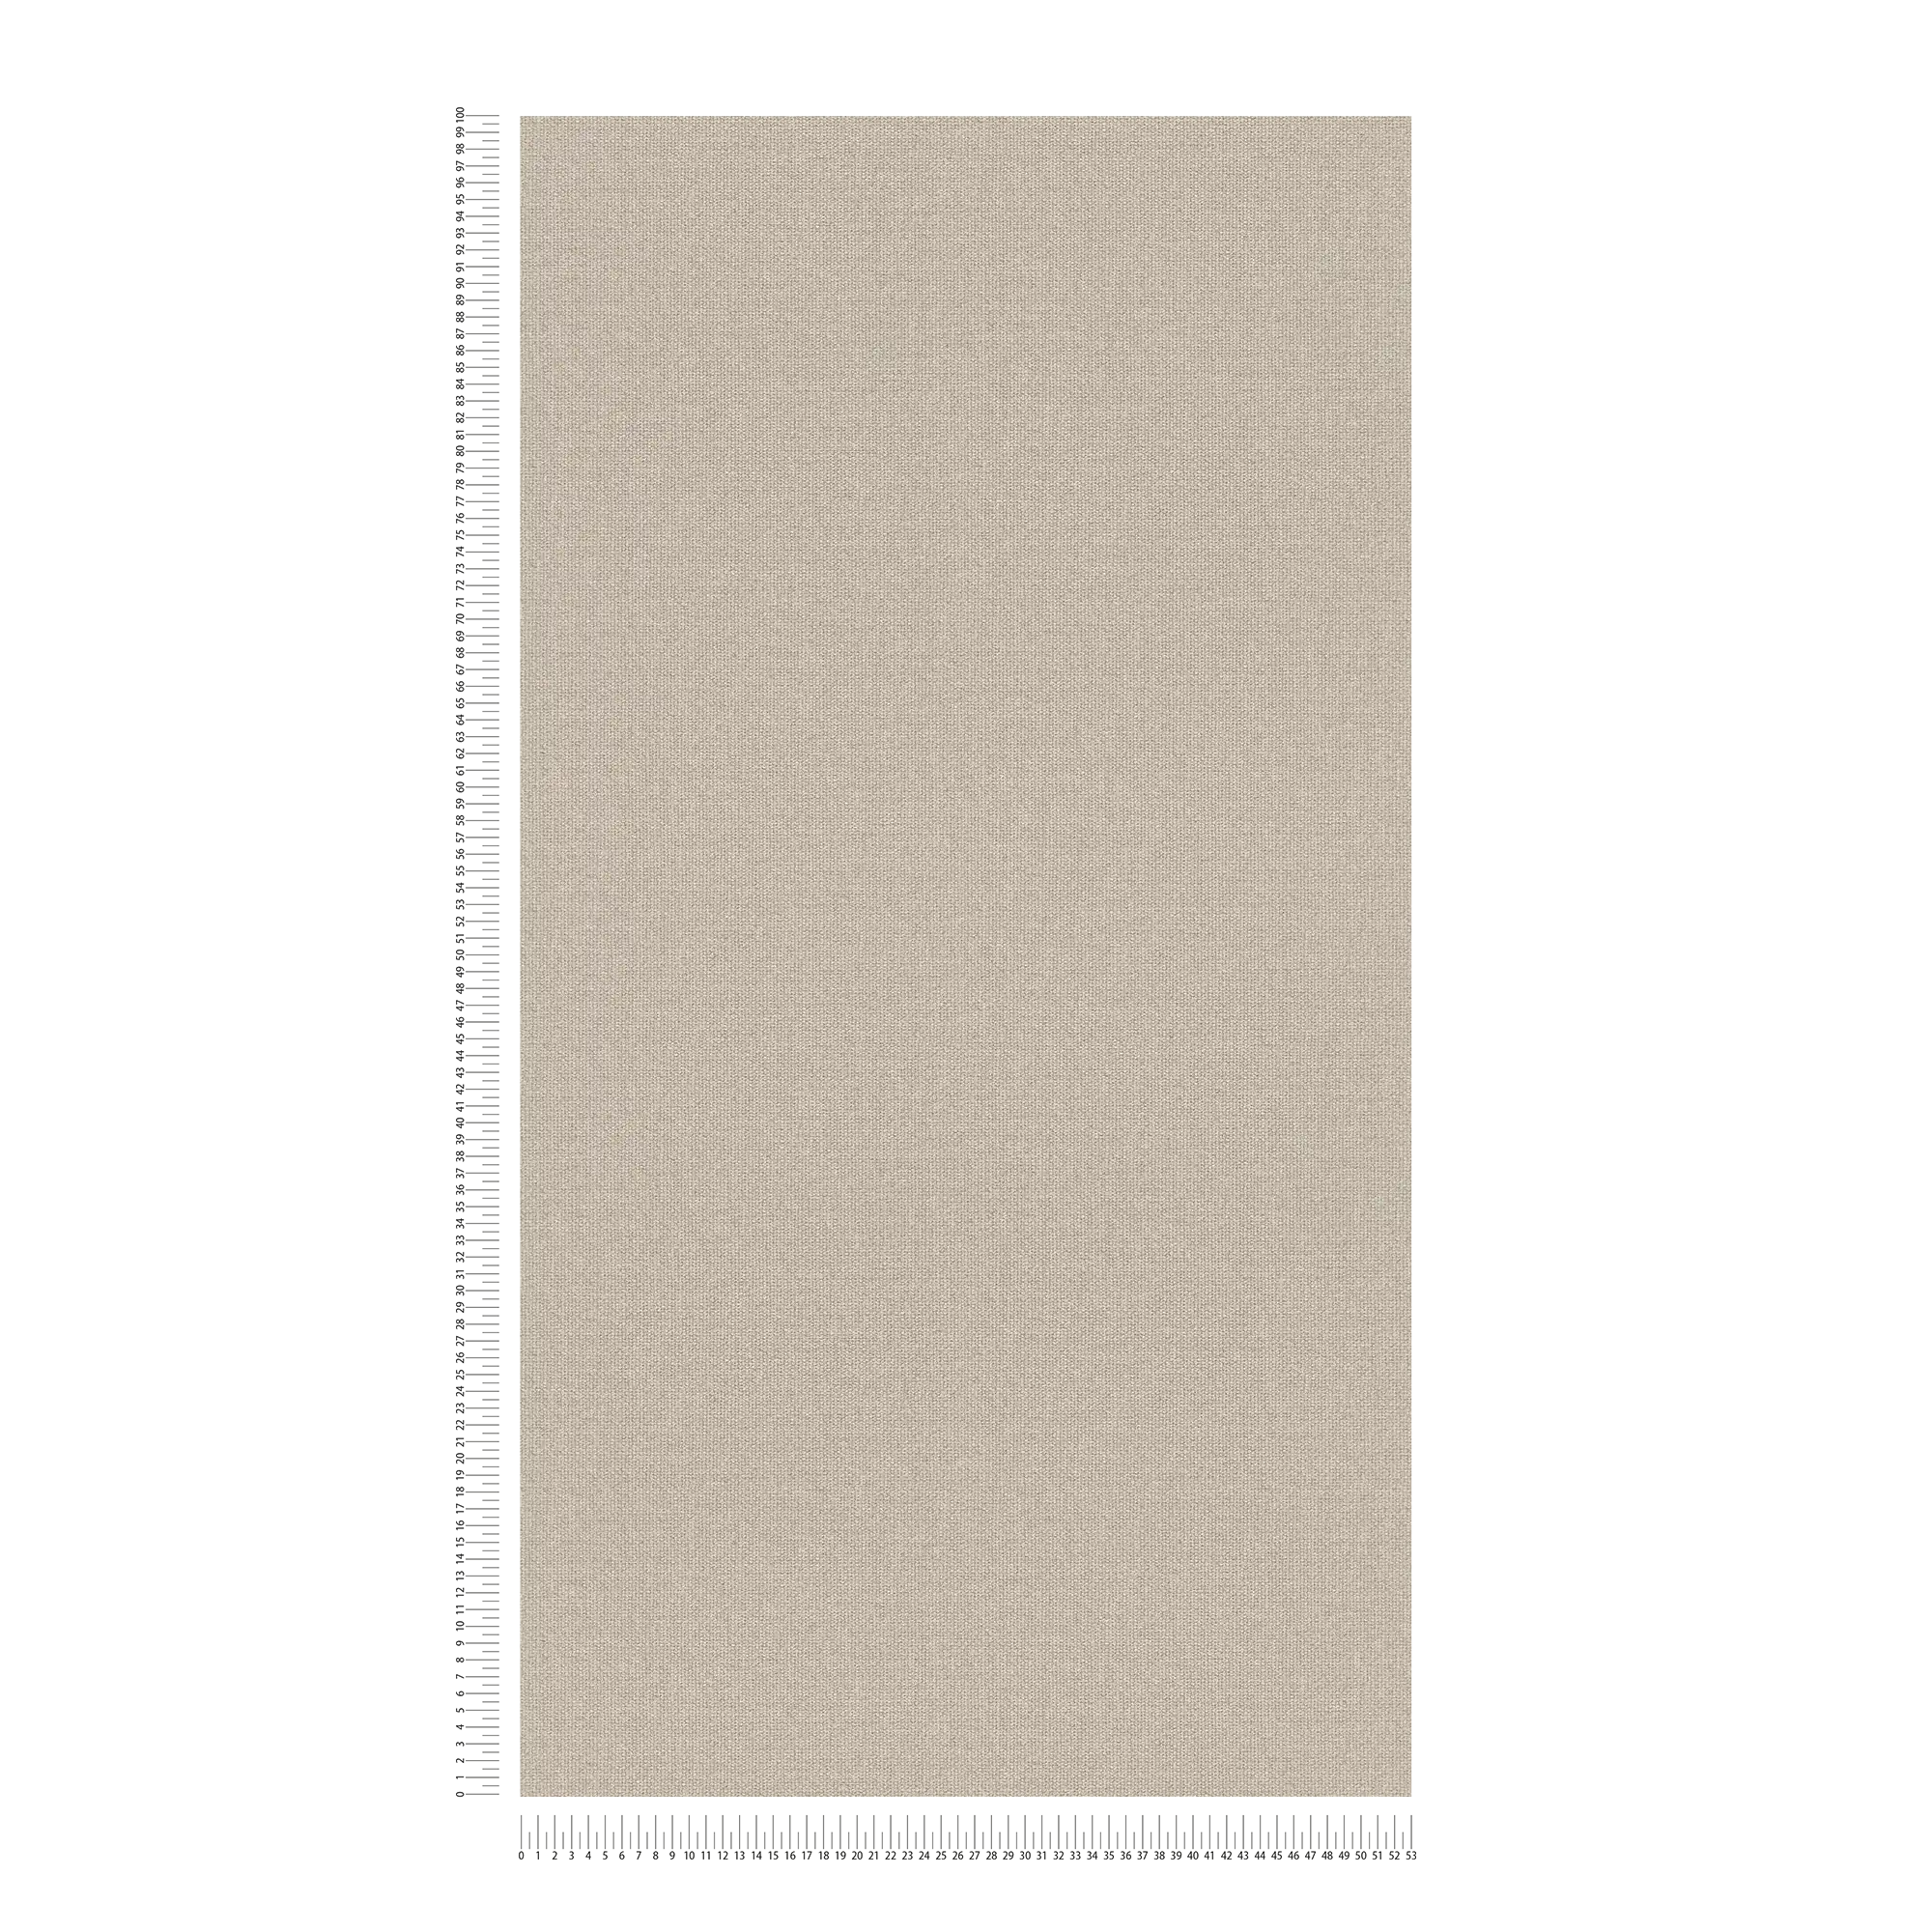             Carta da parati effetto lino con superficie strutturata, tinta unita - Beige, Grigio
        